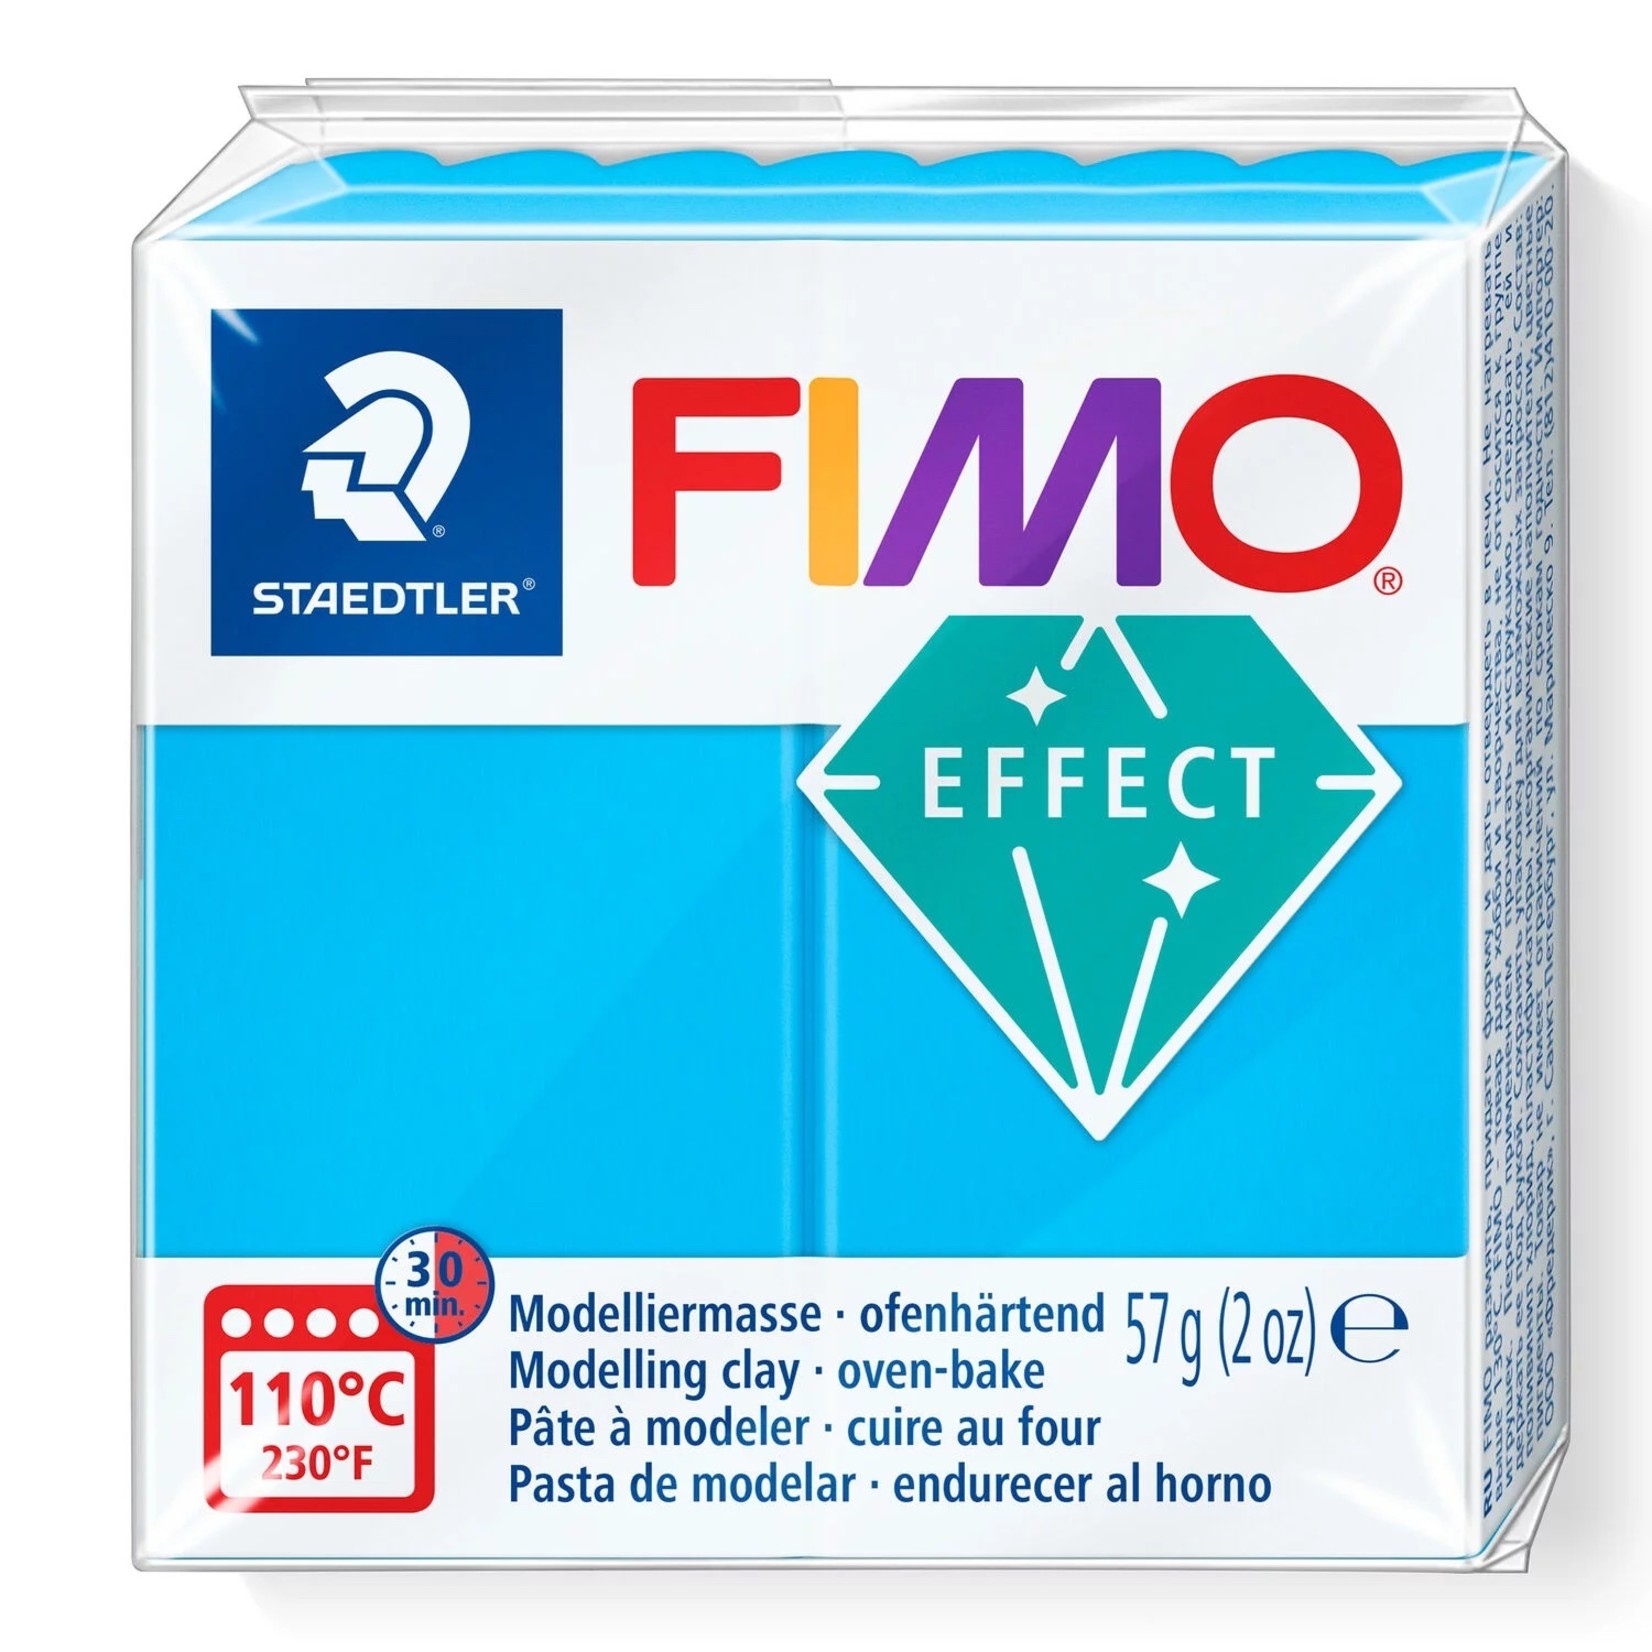 STAEDTLER FIMO EFFECT TRANSLUCENT 374 BLUE